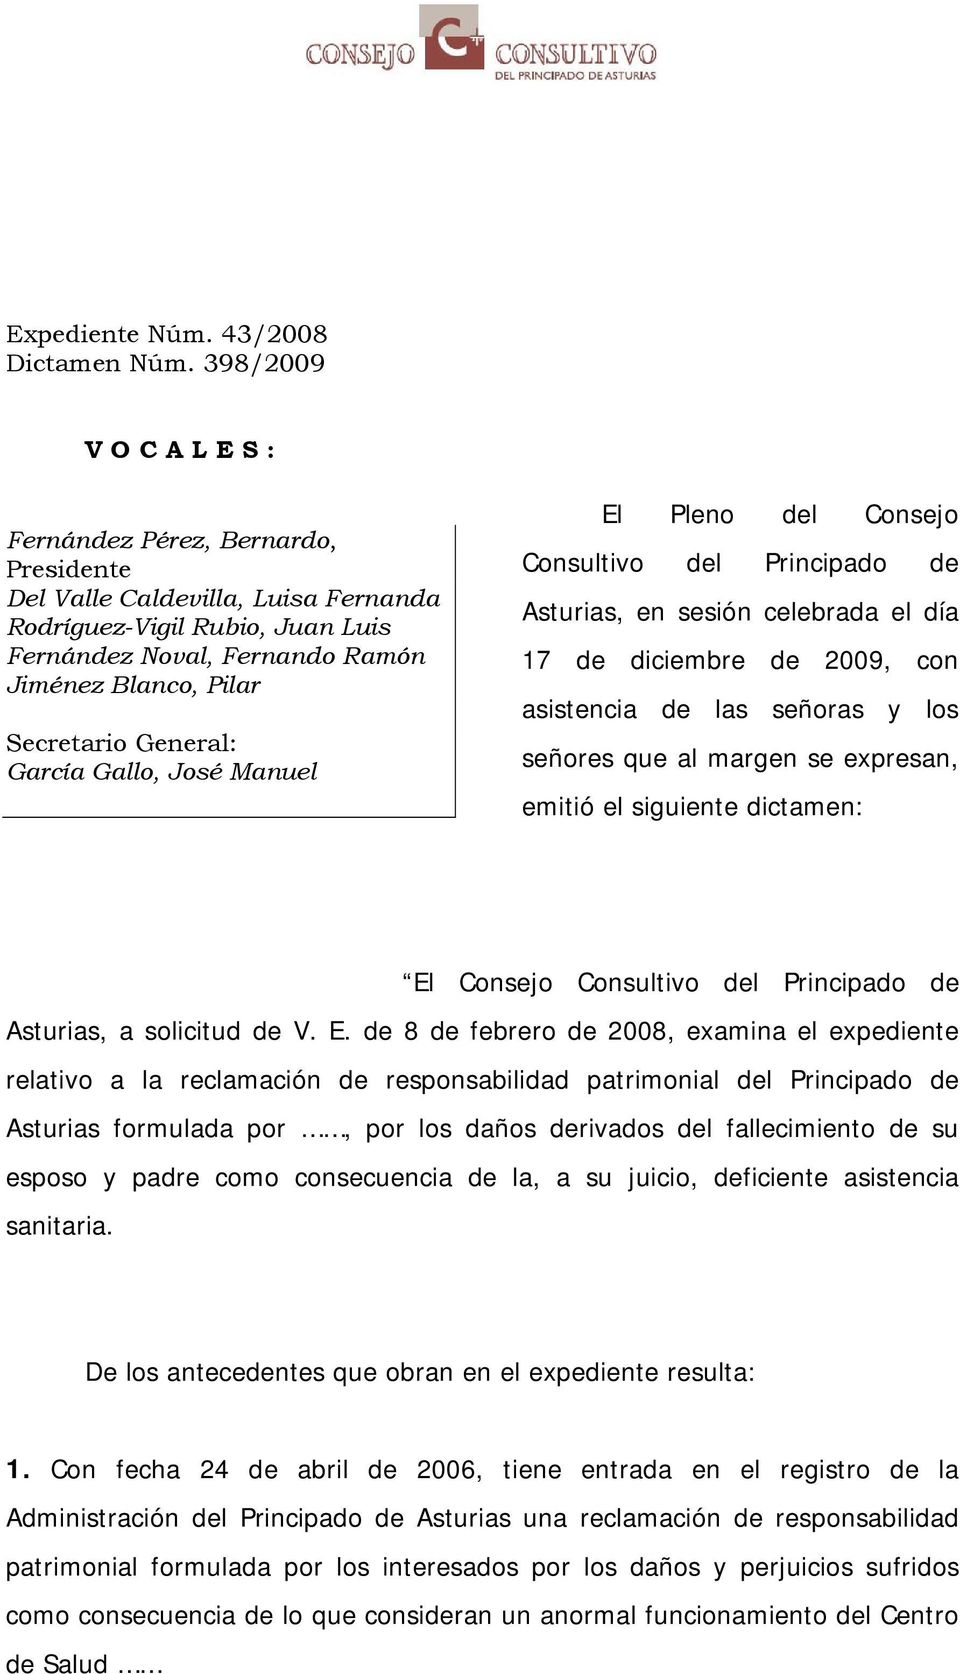 General: García Gallo, José Manuel El Pleno del Consejo Consultivo del Principado de Asturias, en sesión celebrada el día 17 de diciembre de 2009, con asistencia de las señoras y los señores que al